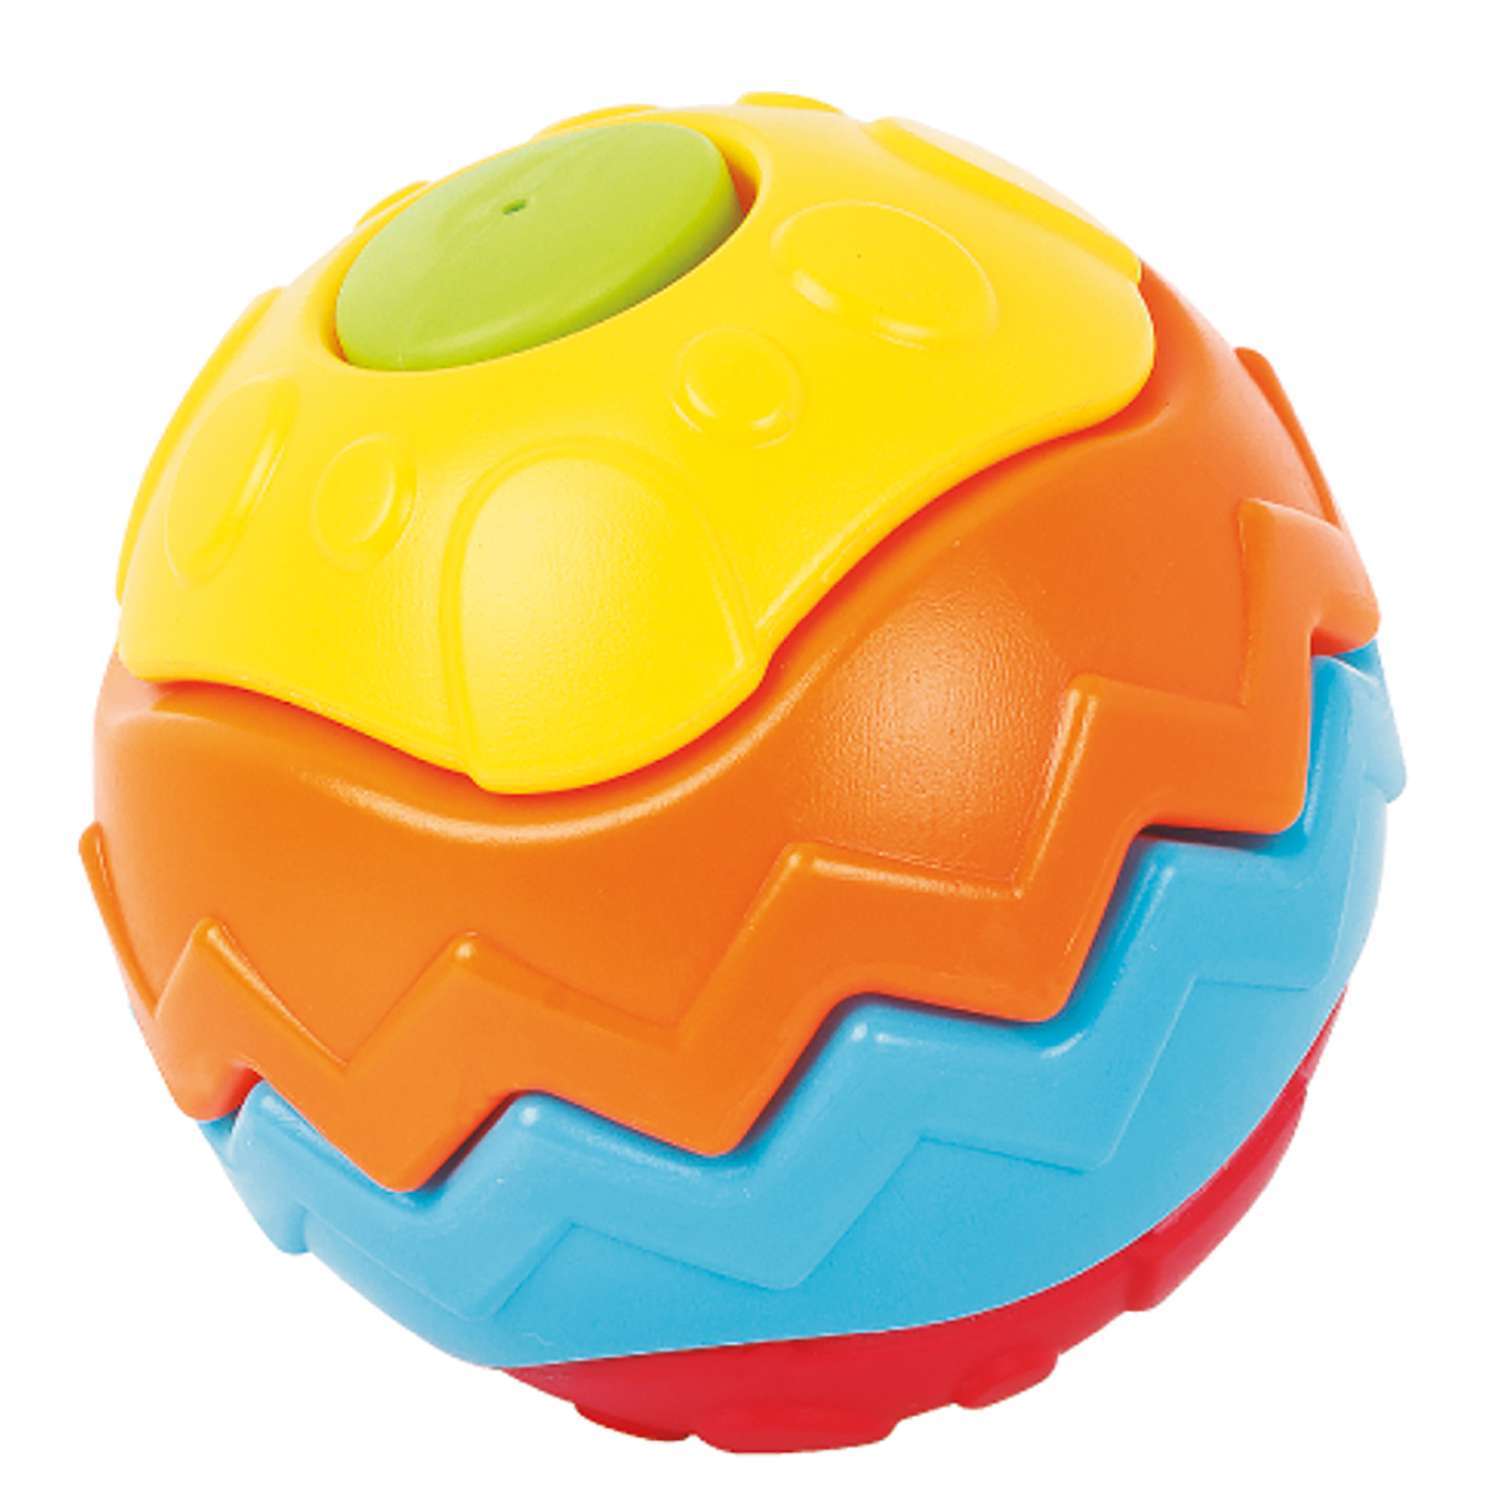 Головоломка ToysLab Мяч 3D - фото 1